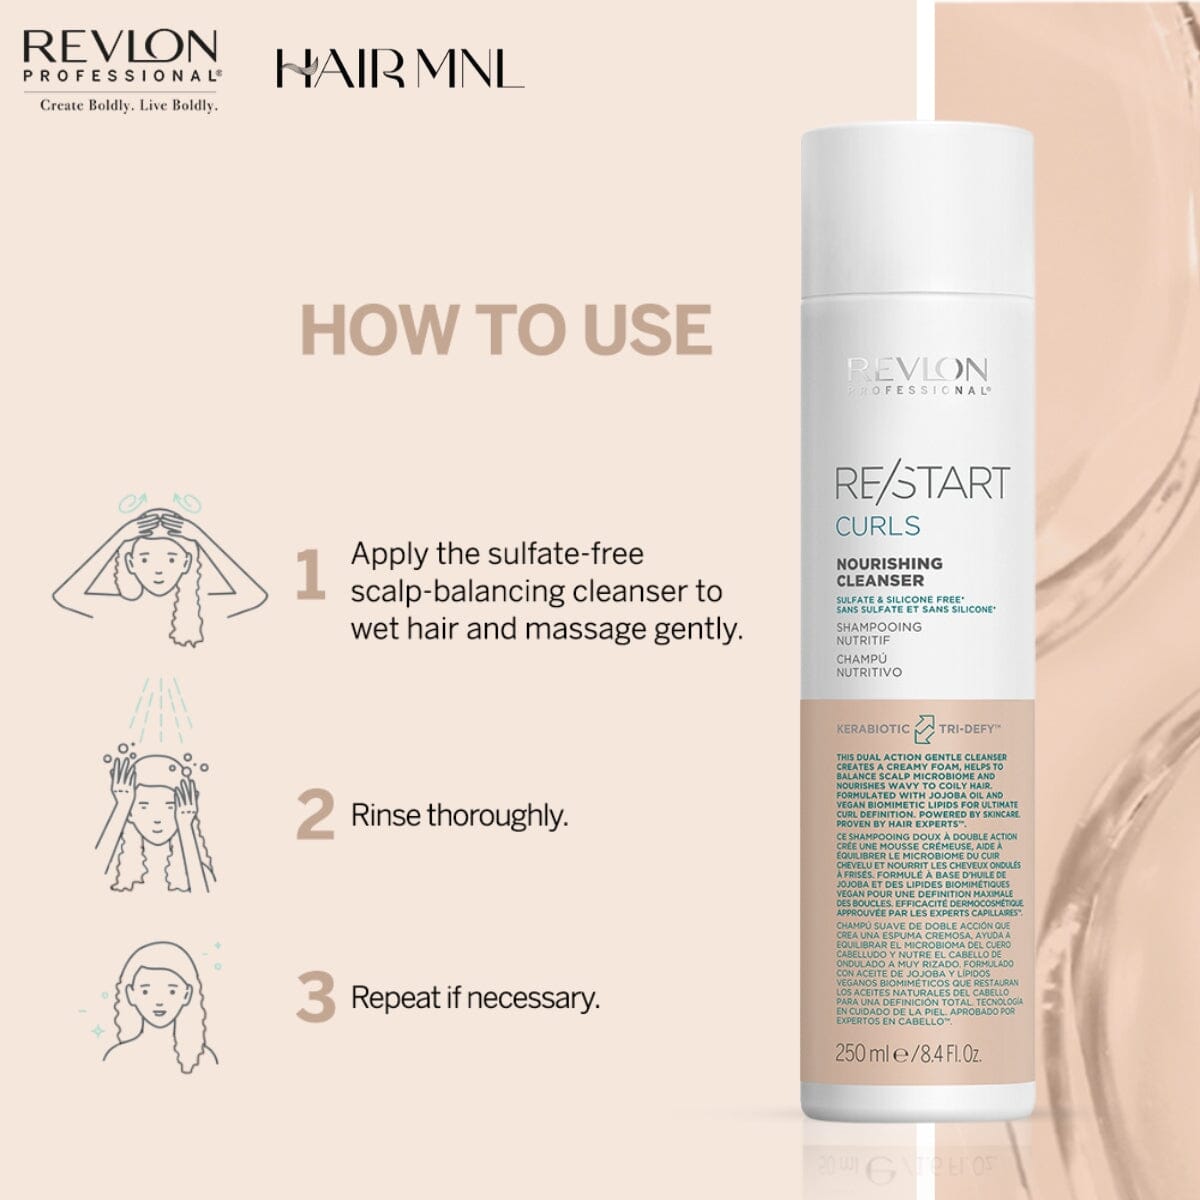 - ReStart Cleanser Nourishing Curls HairMNL - Revlon HairMNL Pro 250ml